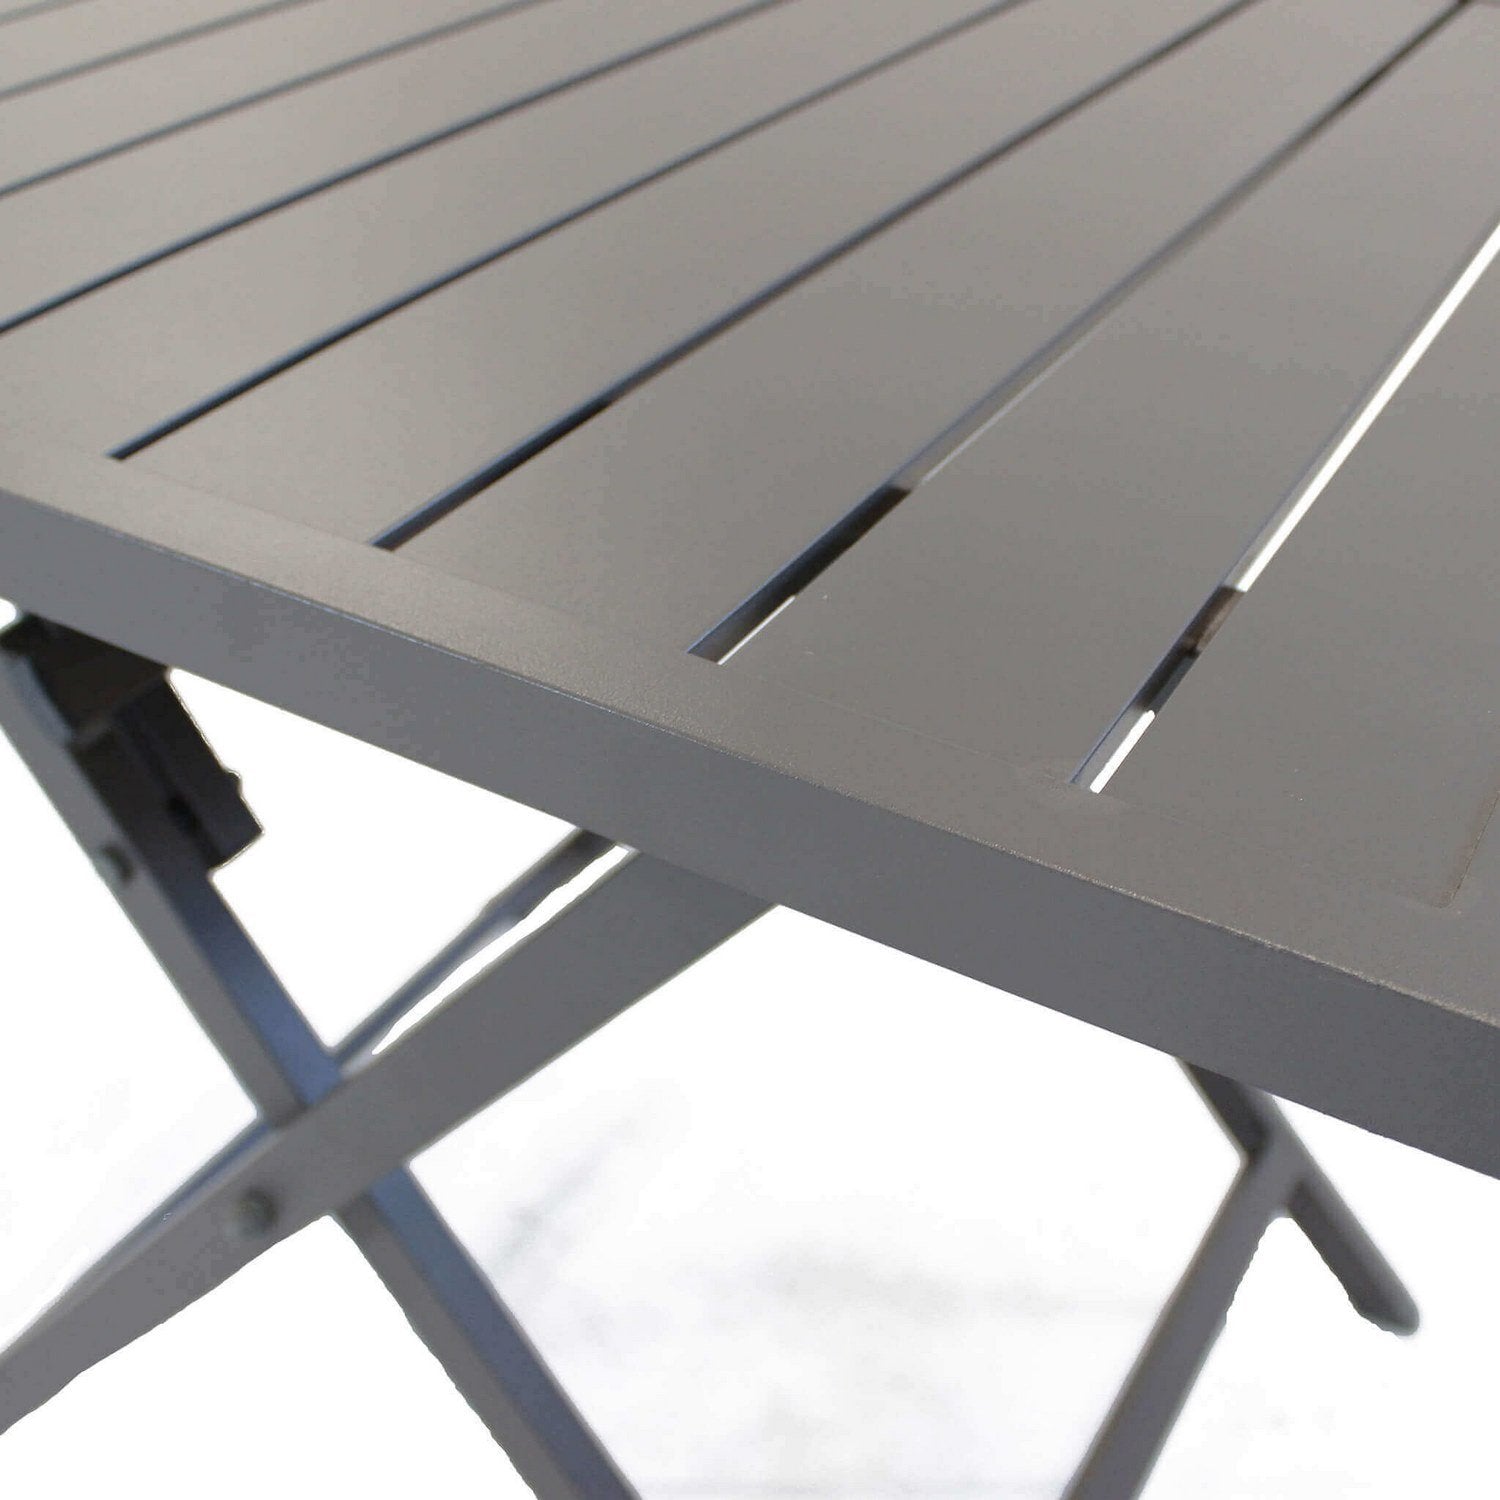 Tavolino pieghevole in alluminio 70x70x73h cm colore Taupe mod. Alabama